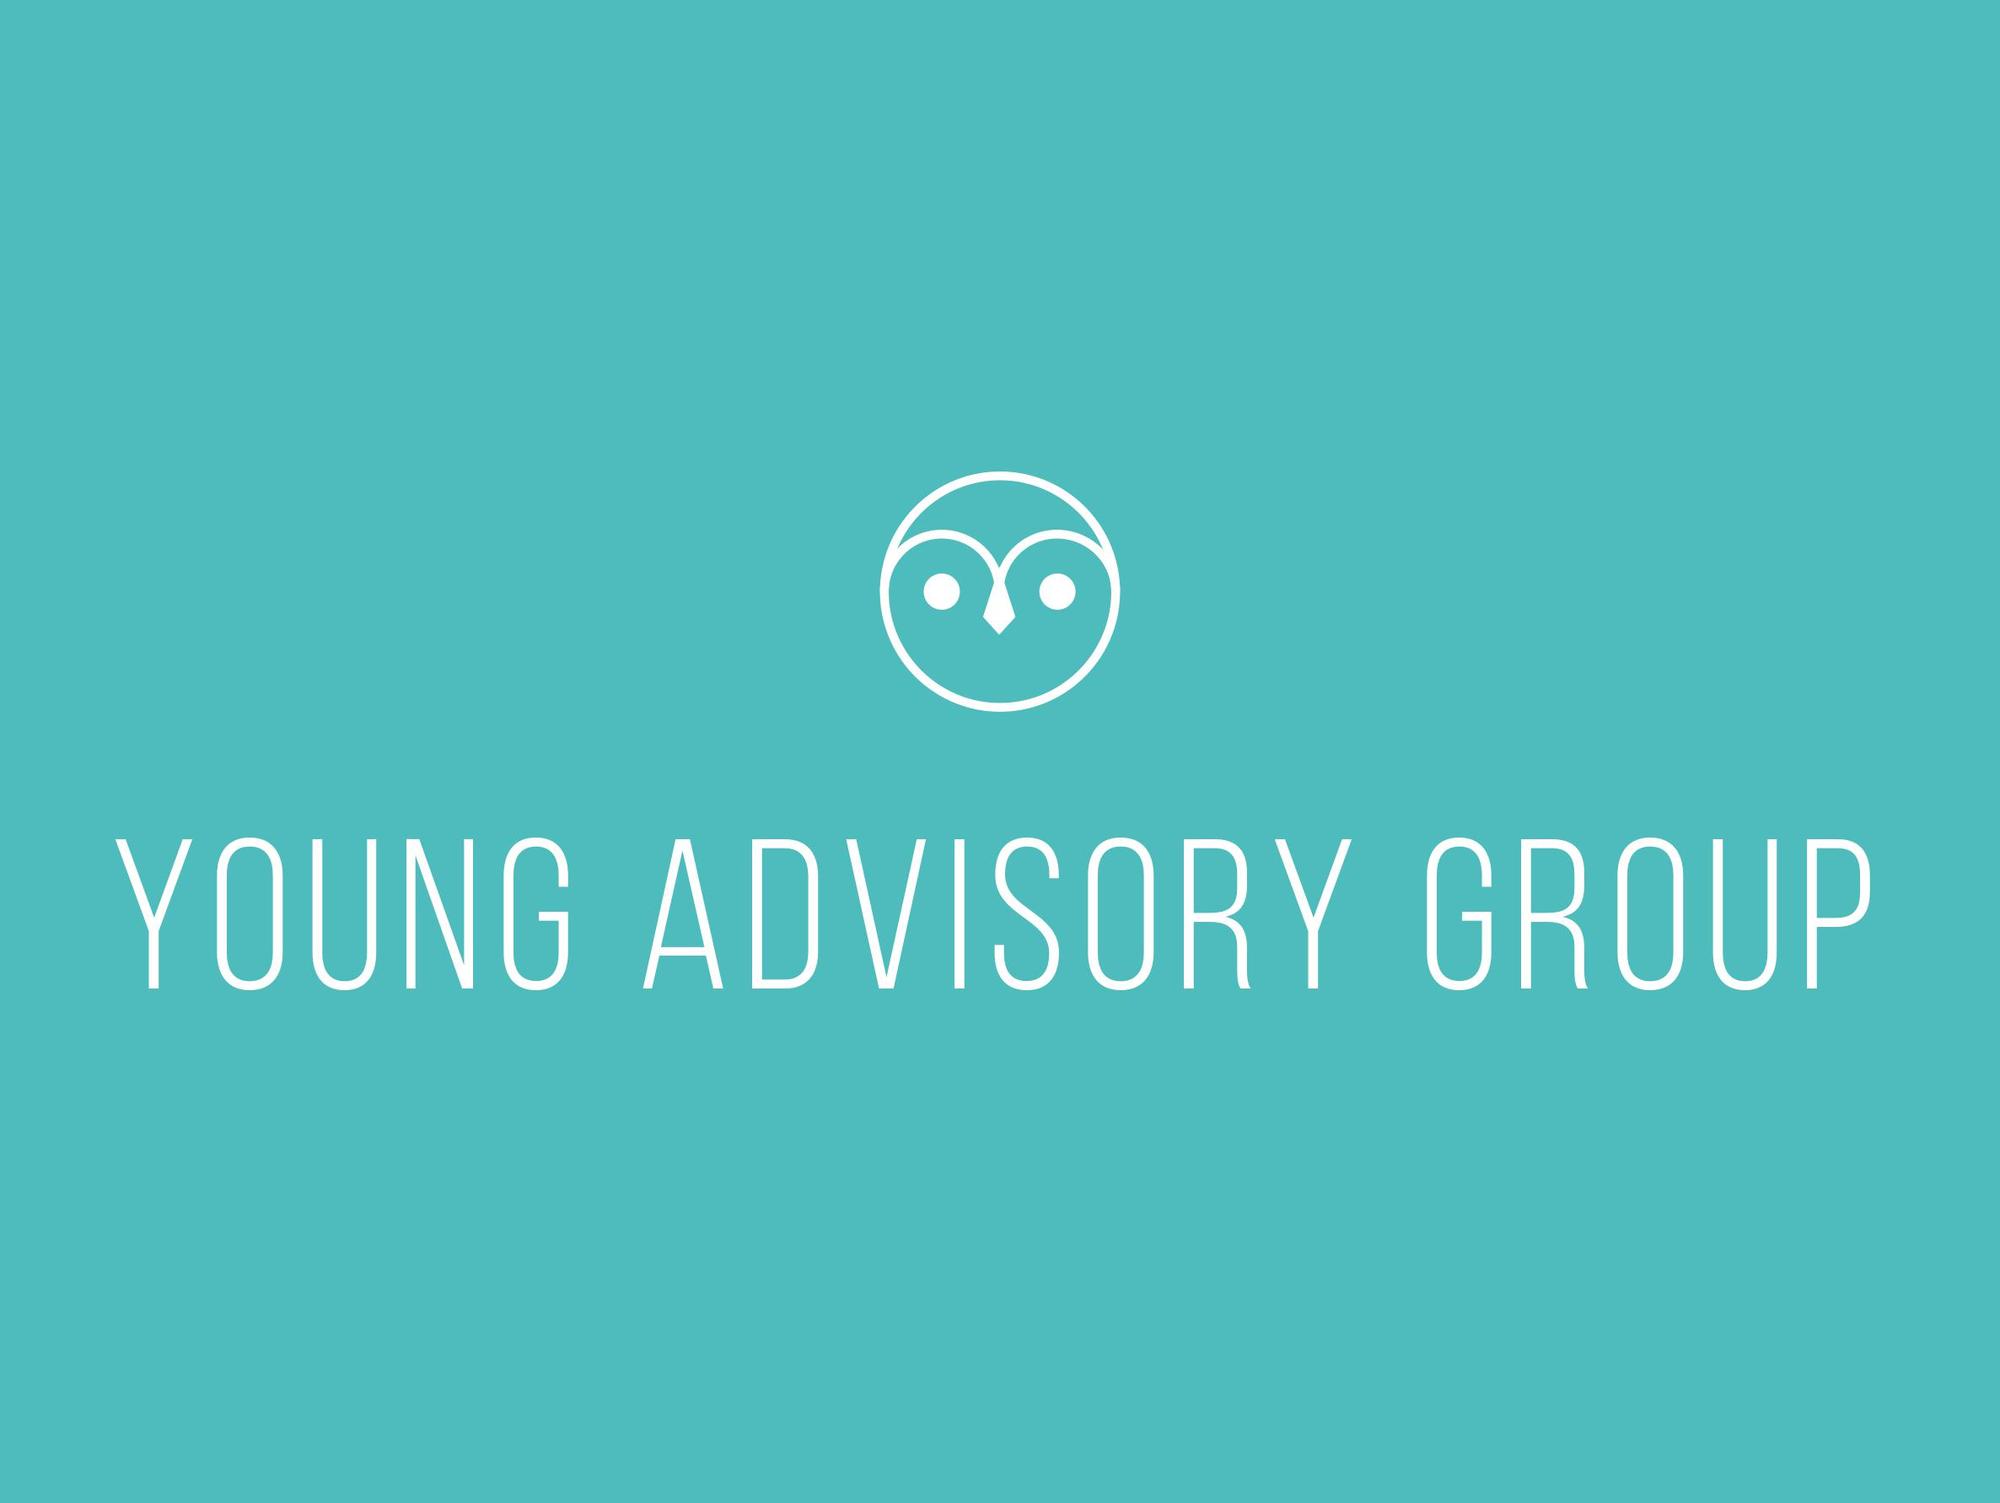 Young Advisory Group: Market Sizing Strategy